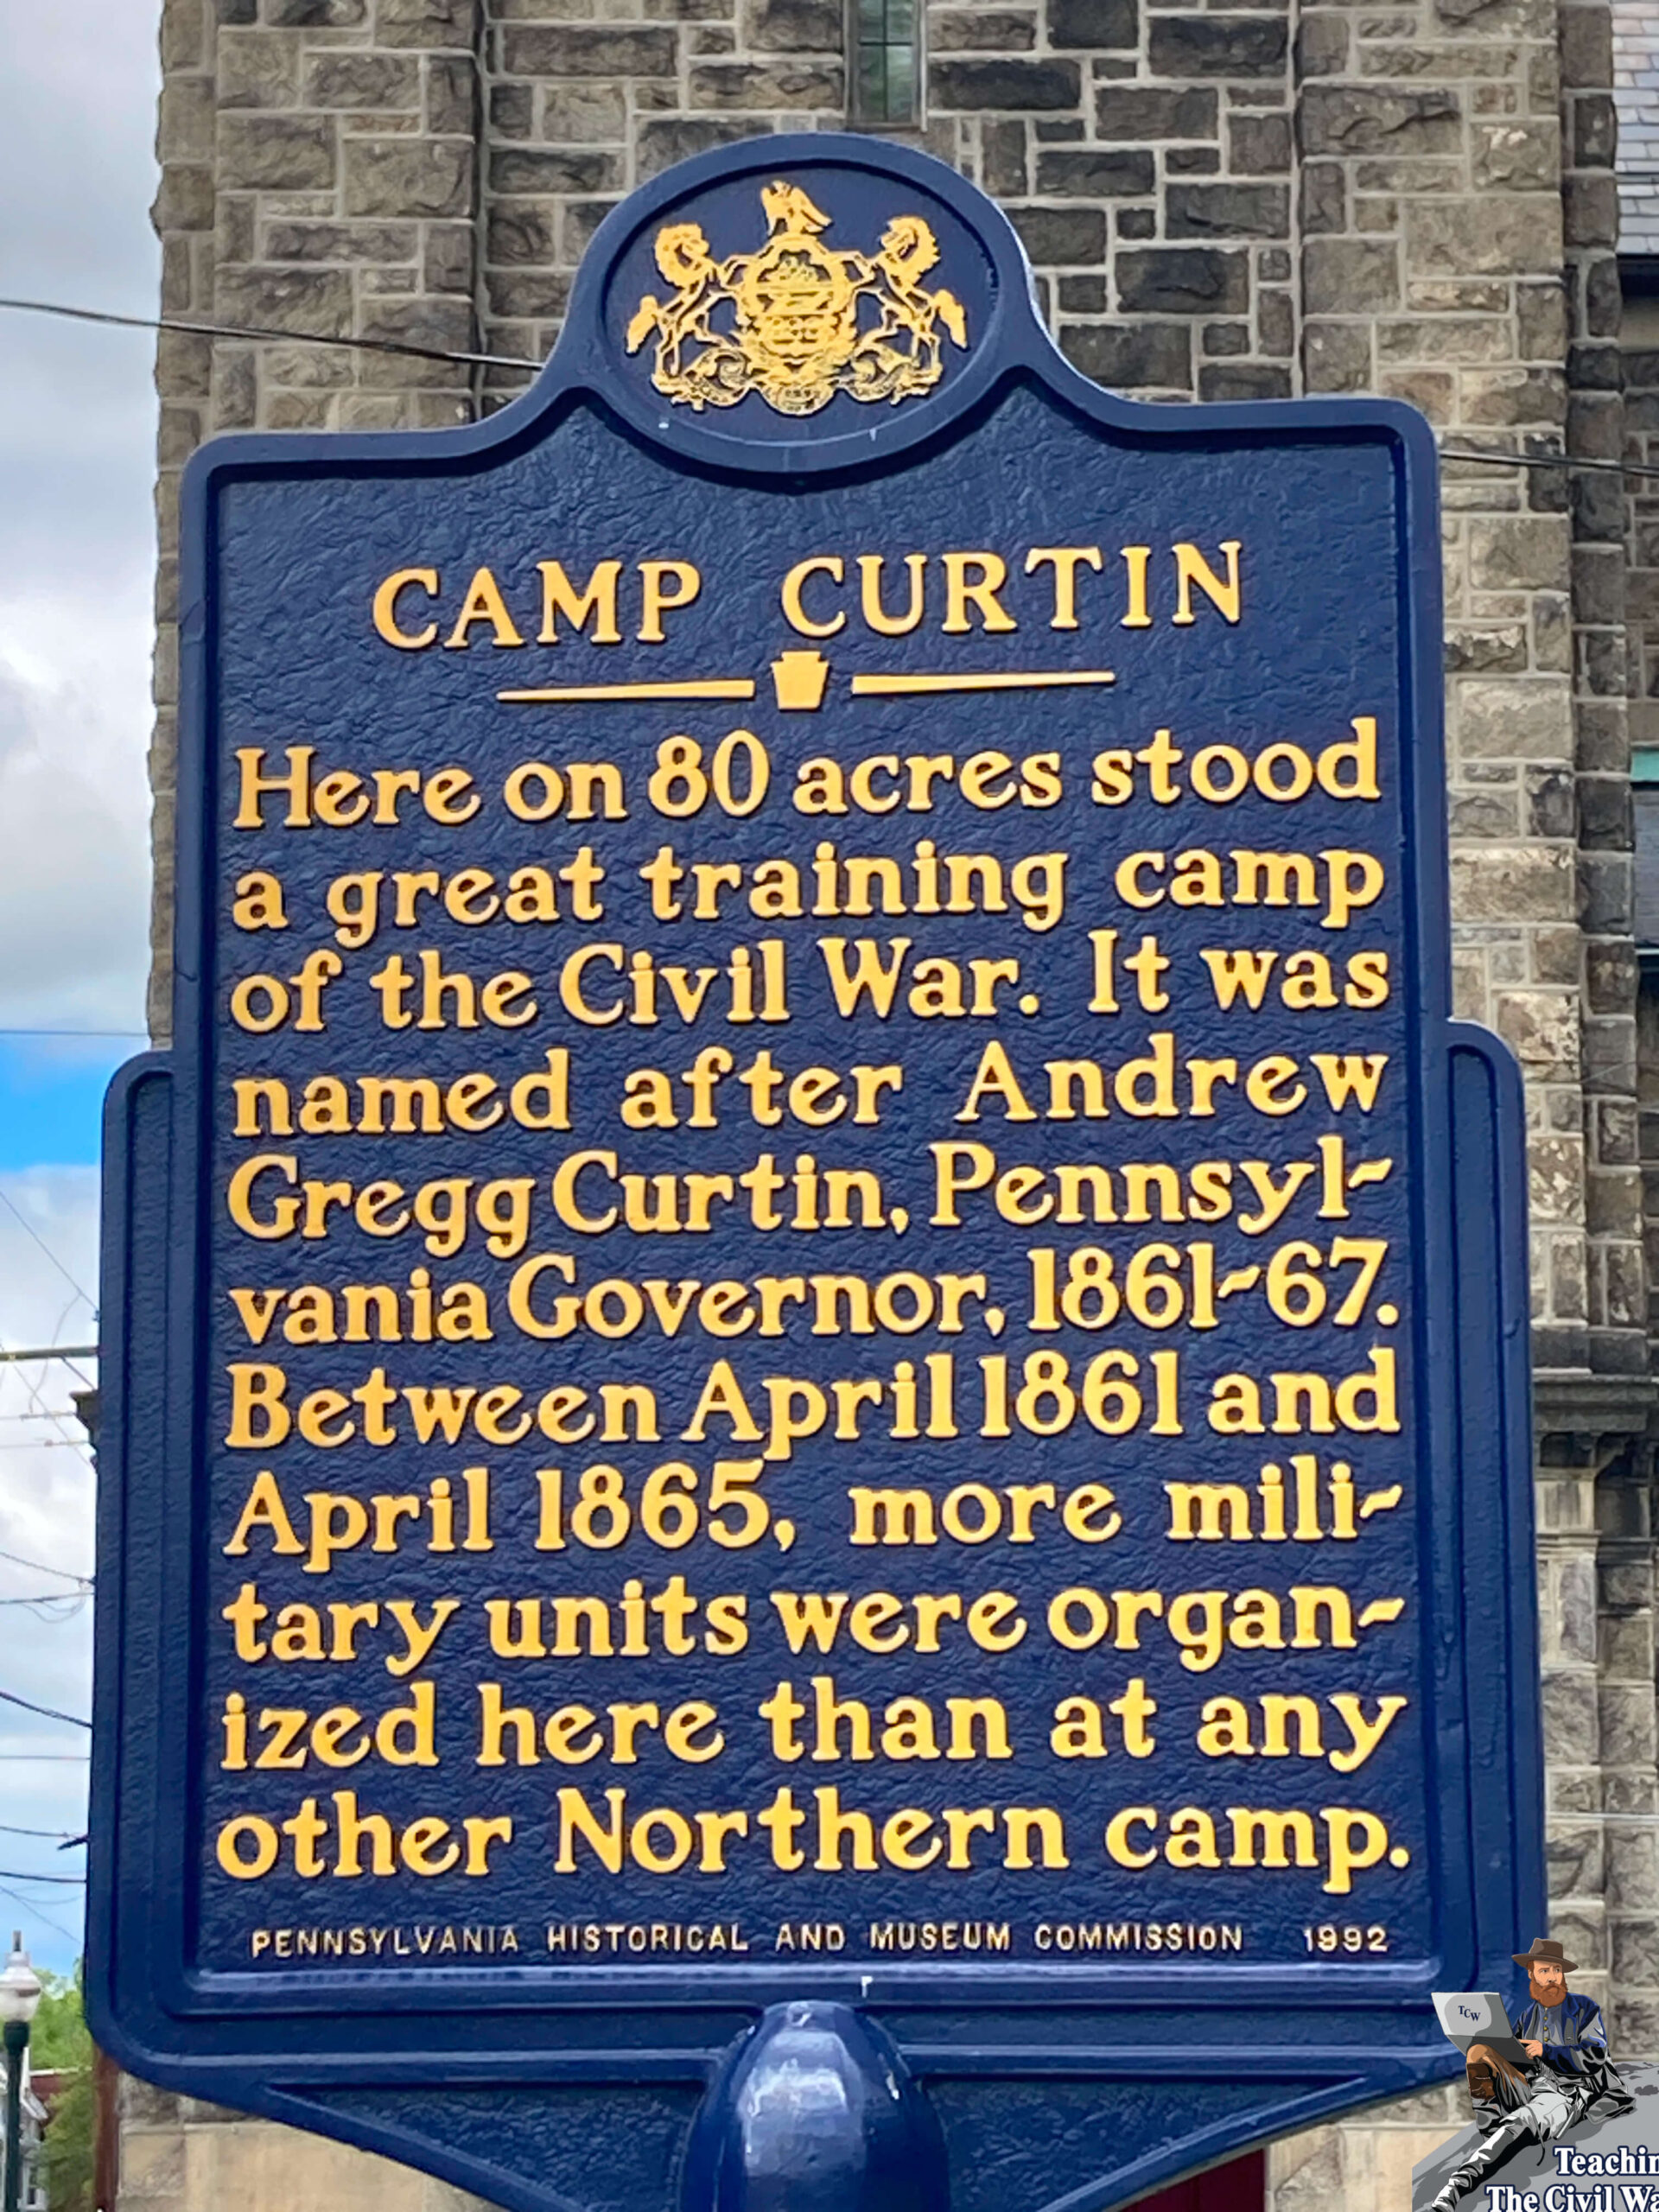 Camp Curtin